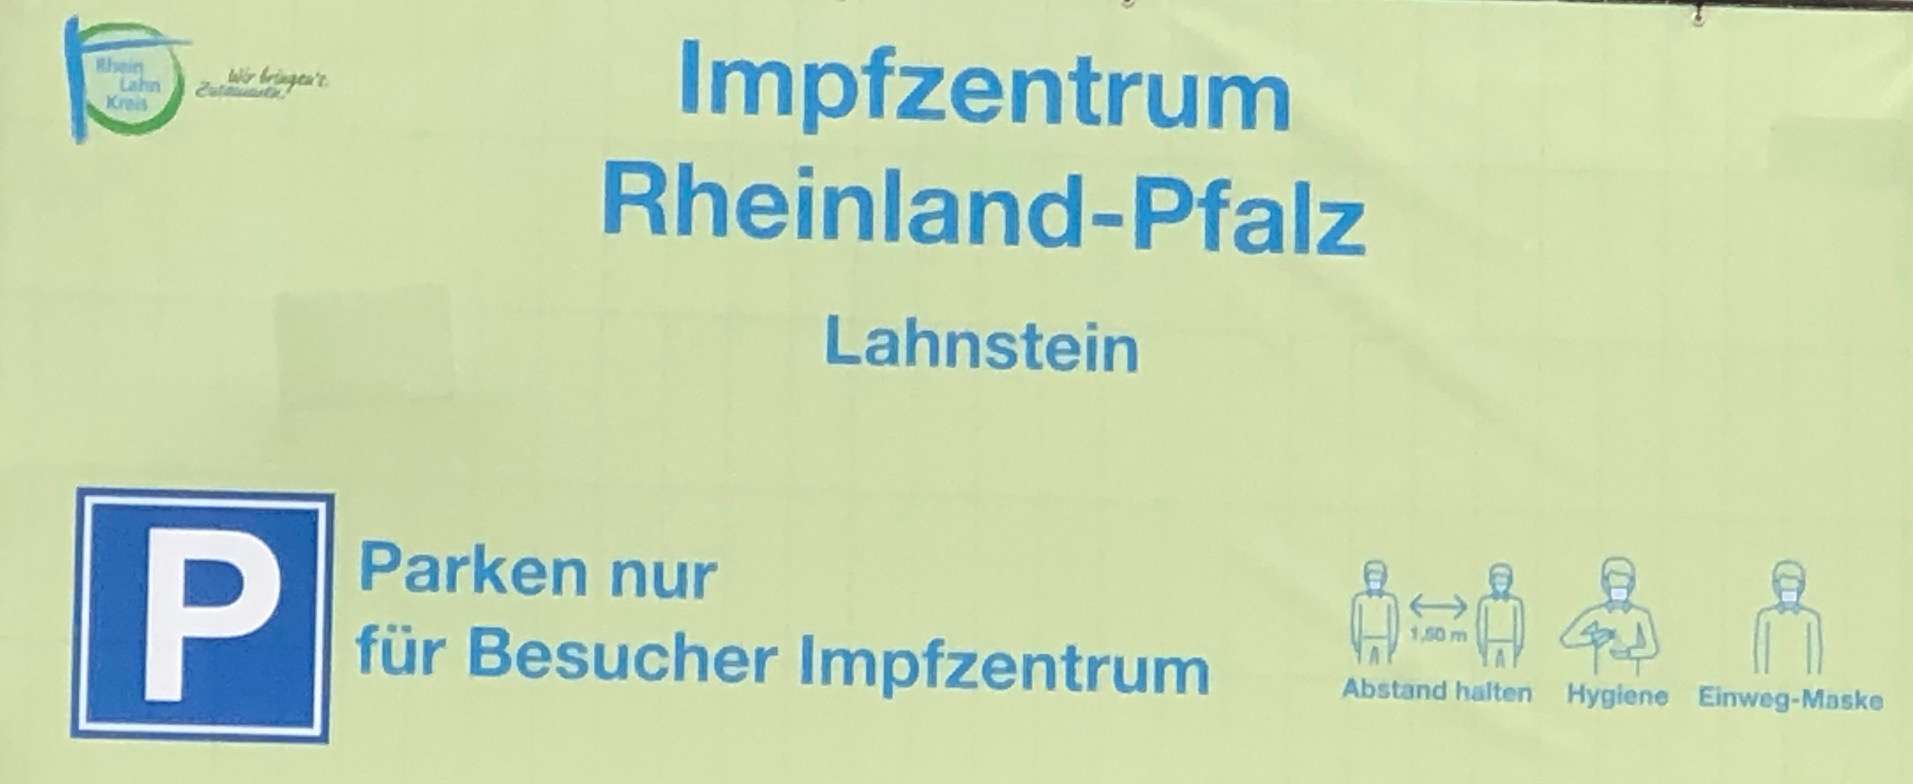 Impfzentrum-Lahnstein-5544.jpg